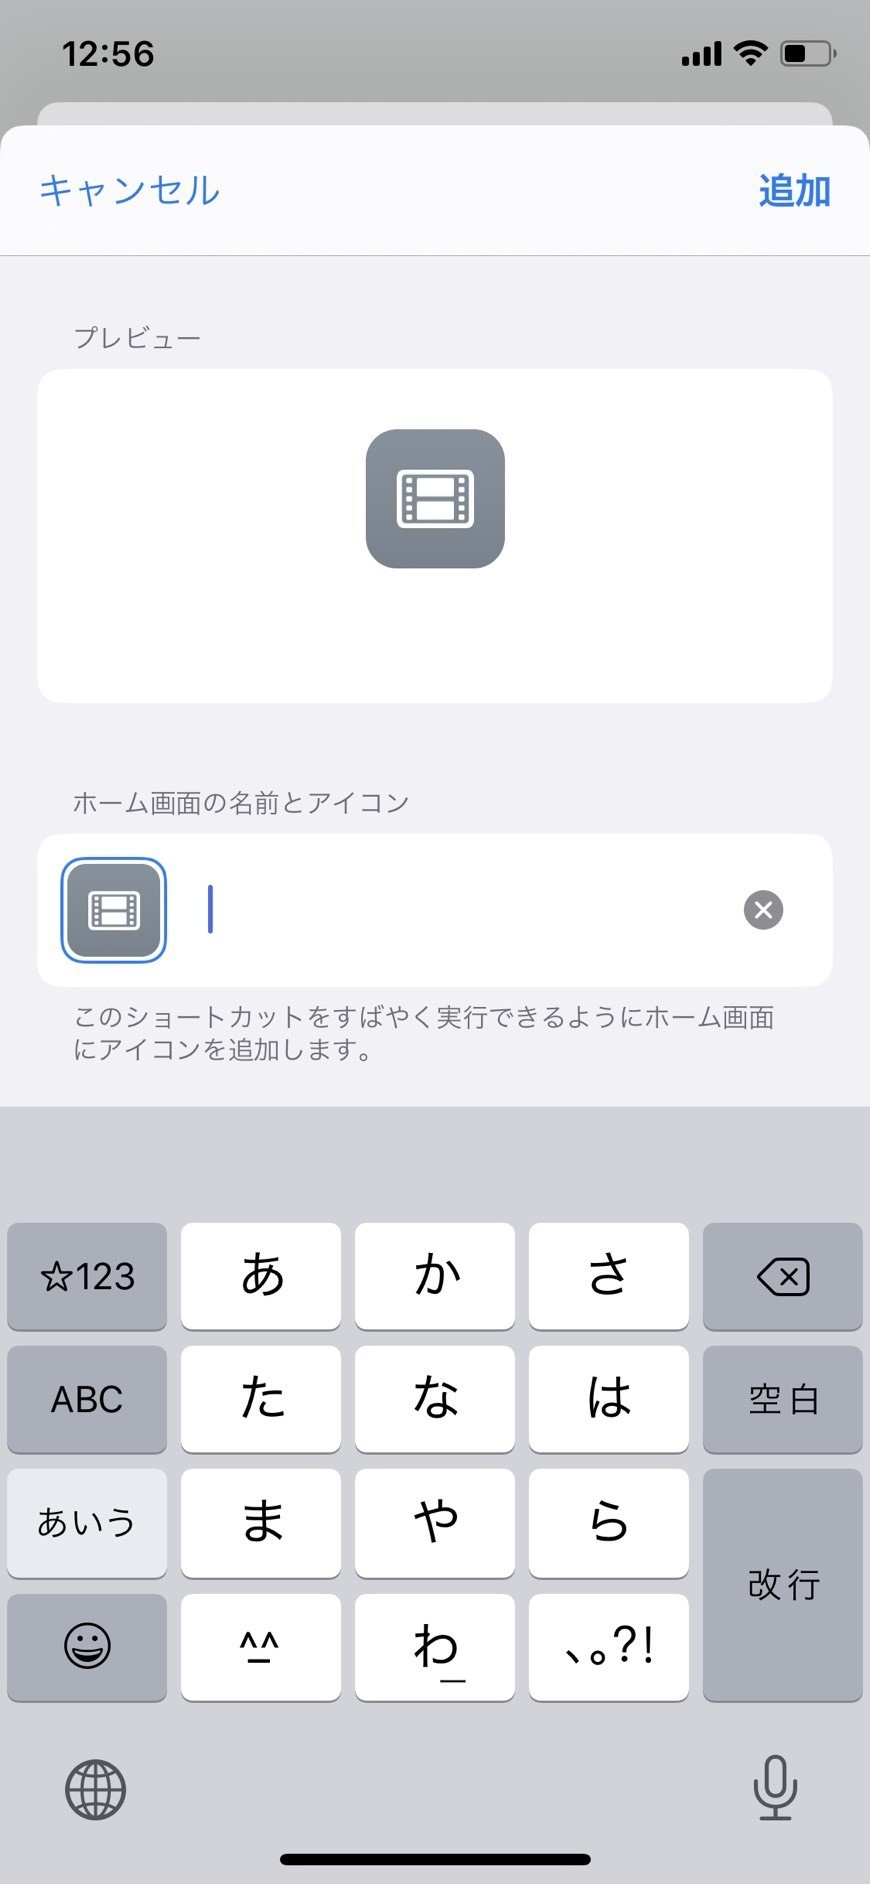 Iphoneホーム画面をスタイリッシュに アプリ名 透明アイコン編 Nakagawa Note